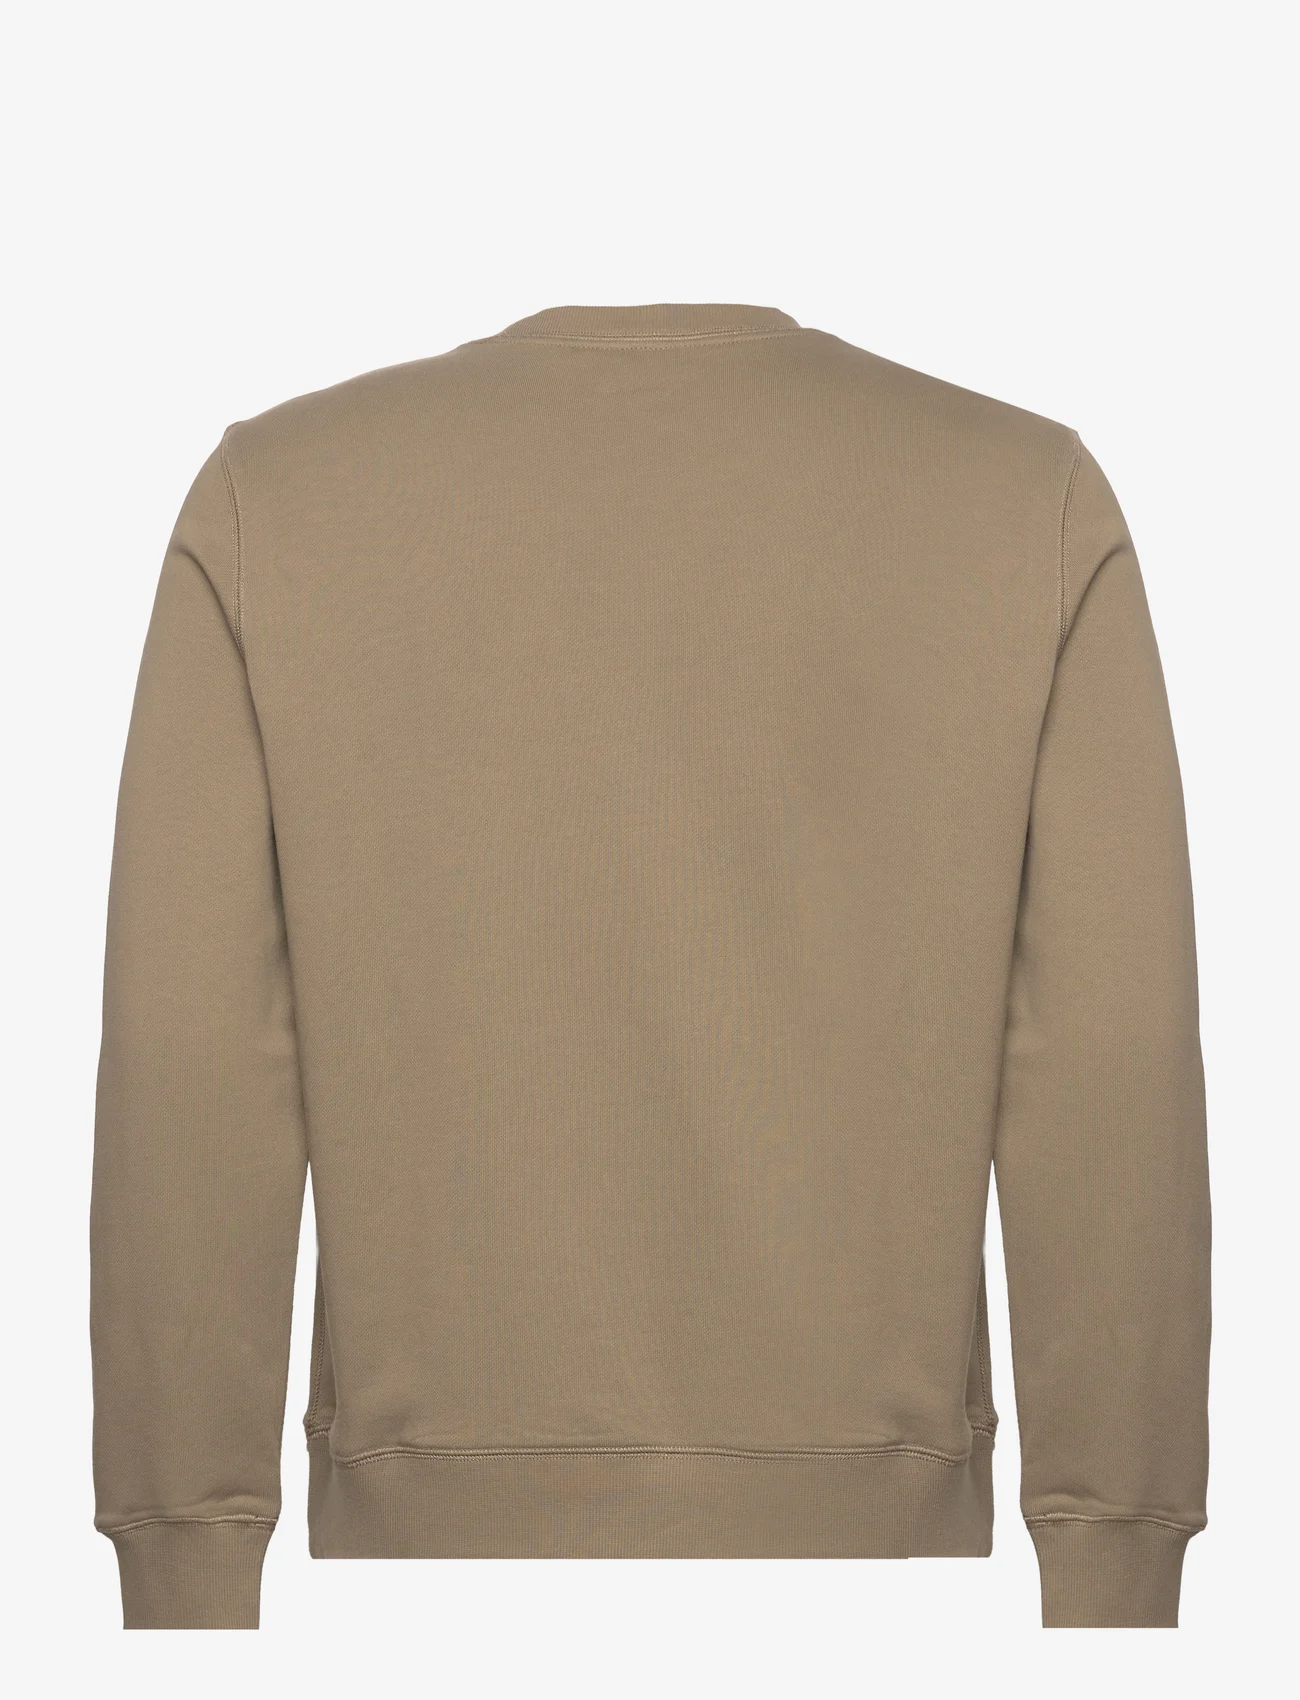 Morris - Carter Sweatshirt - sportiska stila džemperi - olive - 1